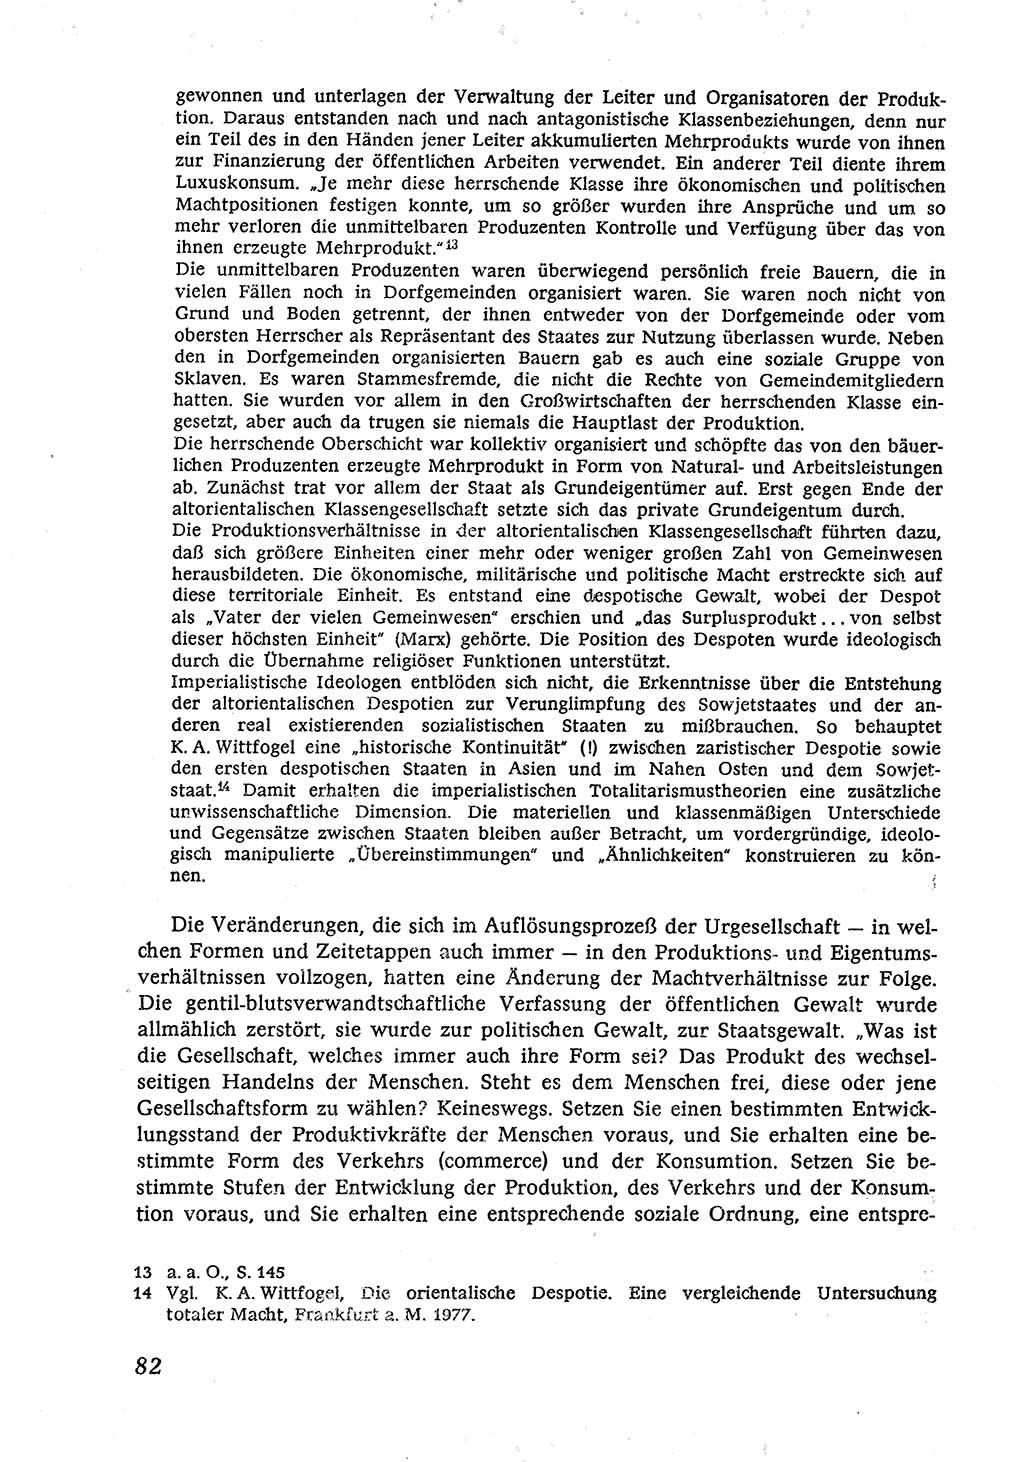 Marxistisch-leninistische (ML) Staats- und Rechtstheorie [Deutsche Demokratische Republik (DDR)], Lehrbuch 1980, Seite 82 (ML St.-R.-Th. DDR Lb. 1980, S. 82)